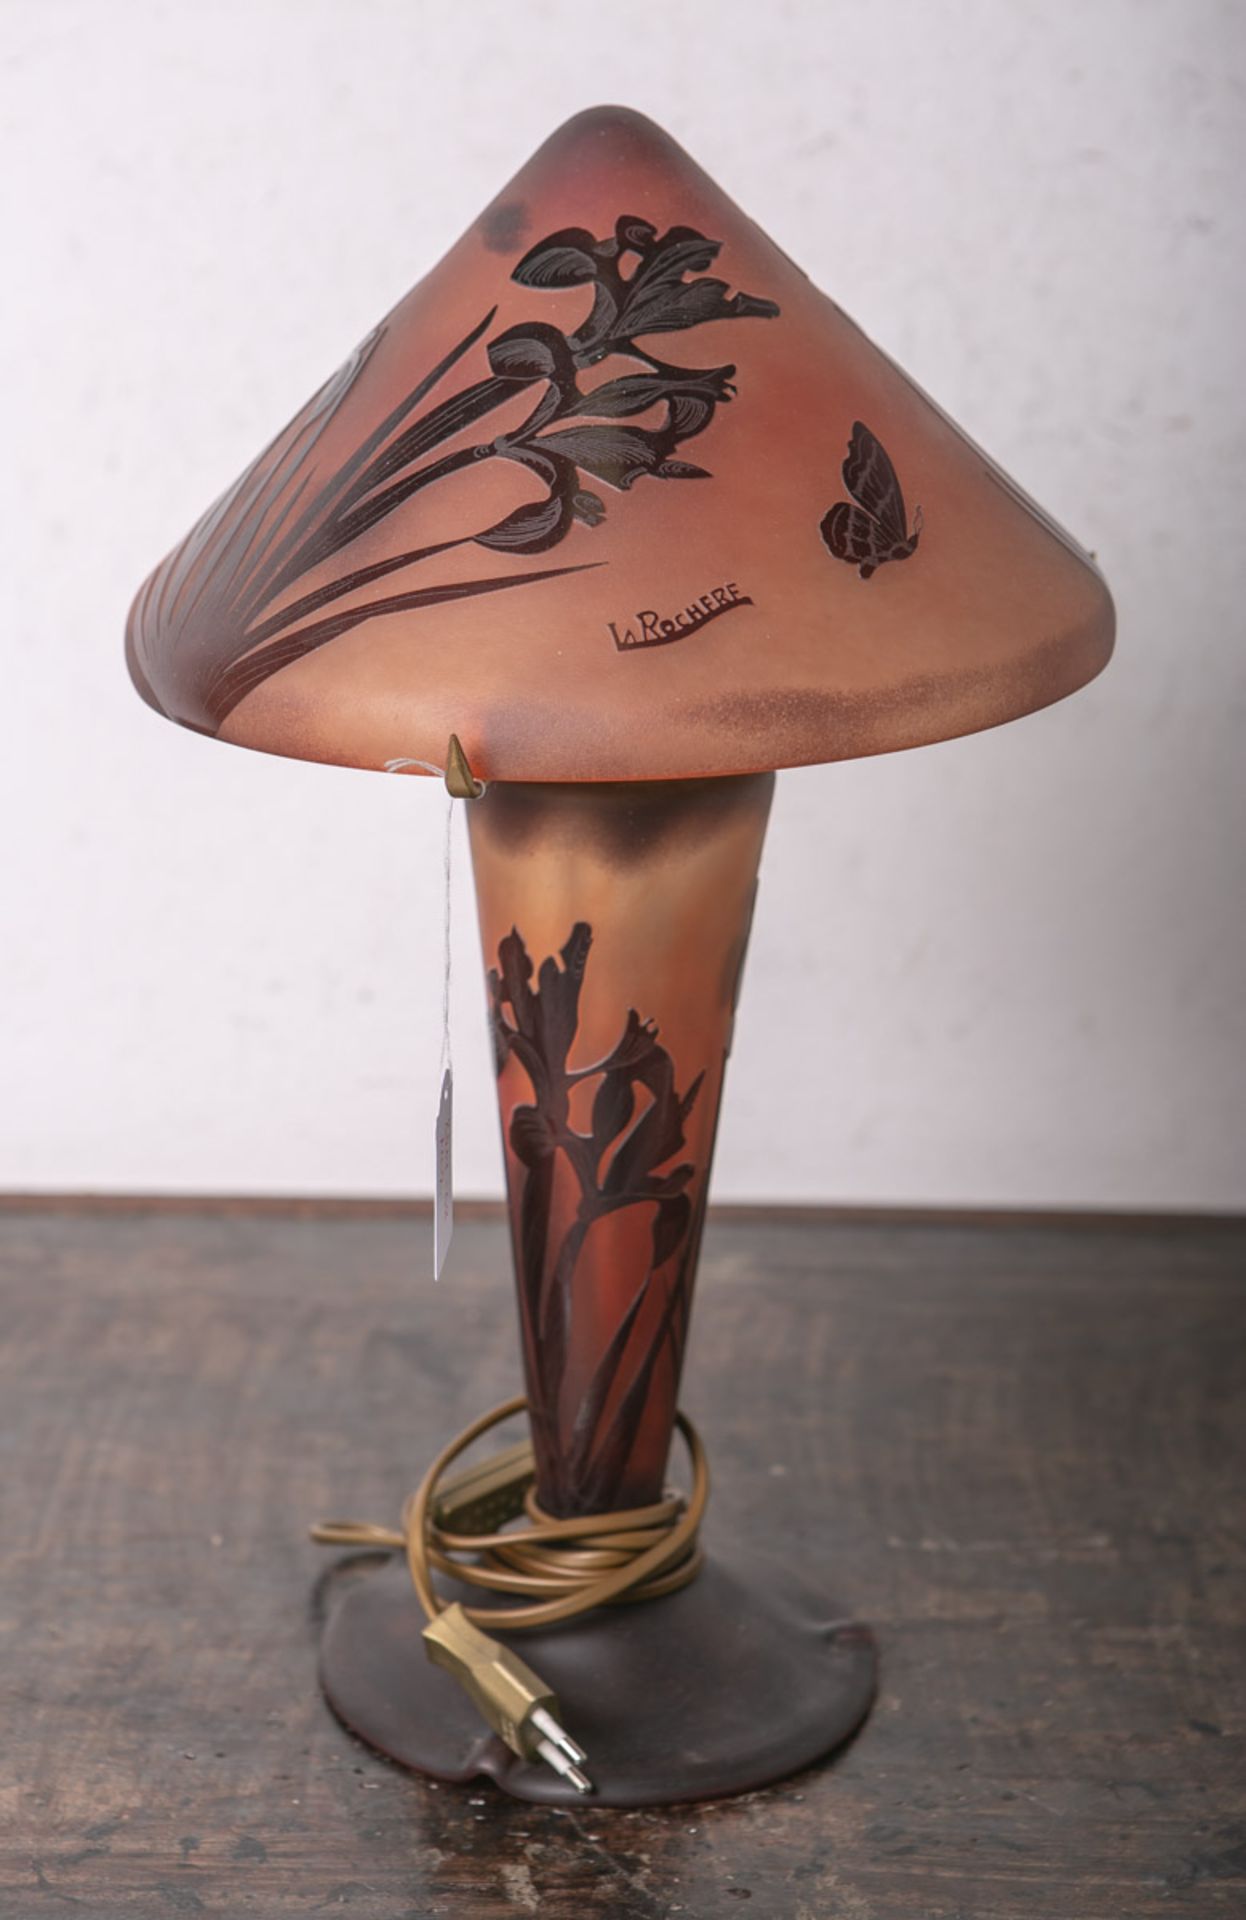 Tischlampe von "La Rochere" (im Stil